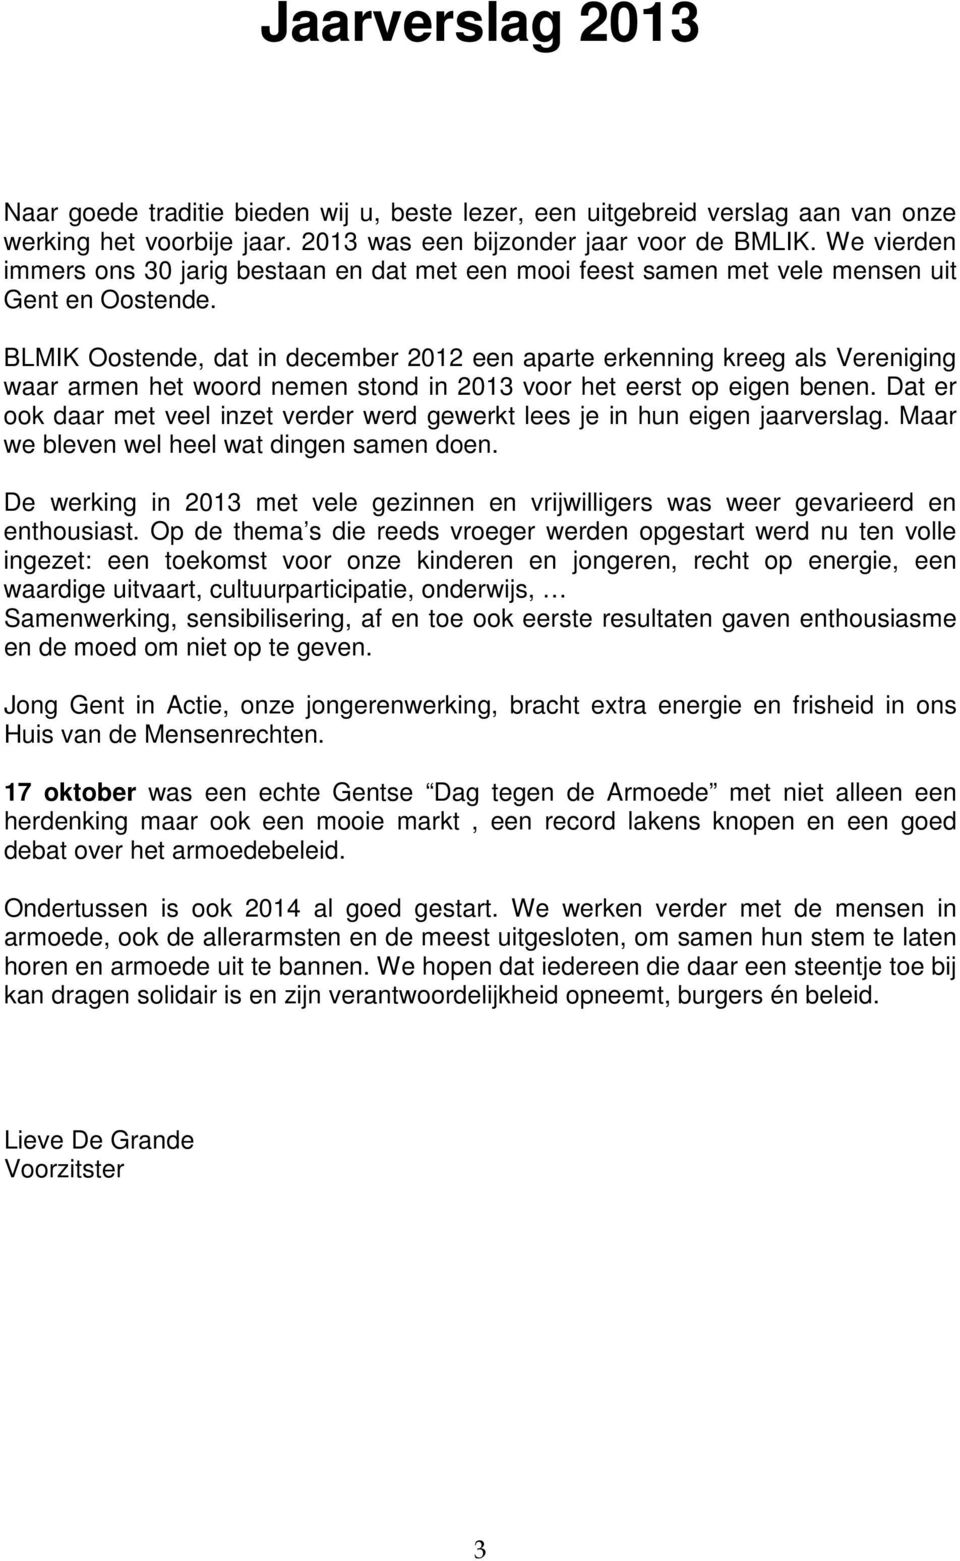 BLMIK Oostende, dat in december 2012 een aparte erkenning kreeg als Vereniging waar armen het woord nemen stond in 2013 voor het eerst op eigen benen.